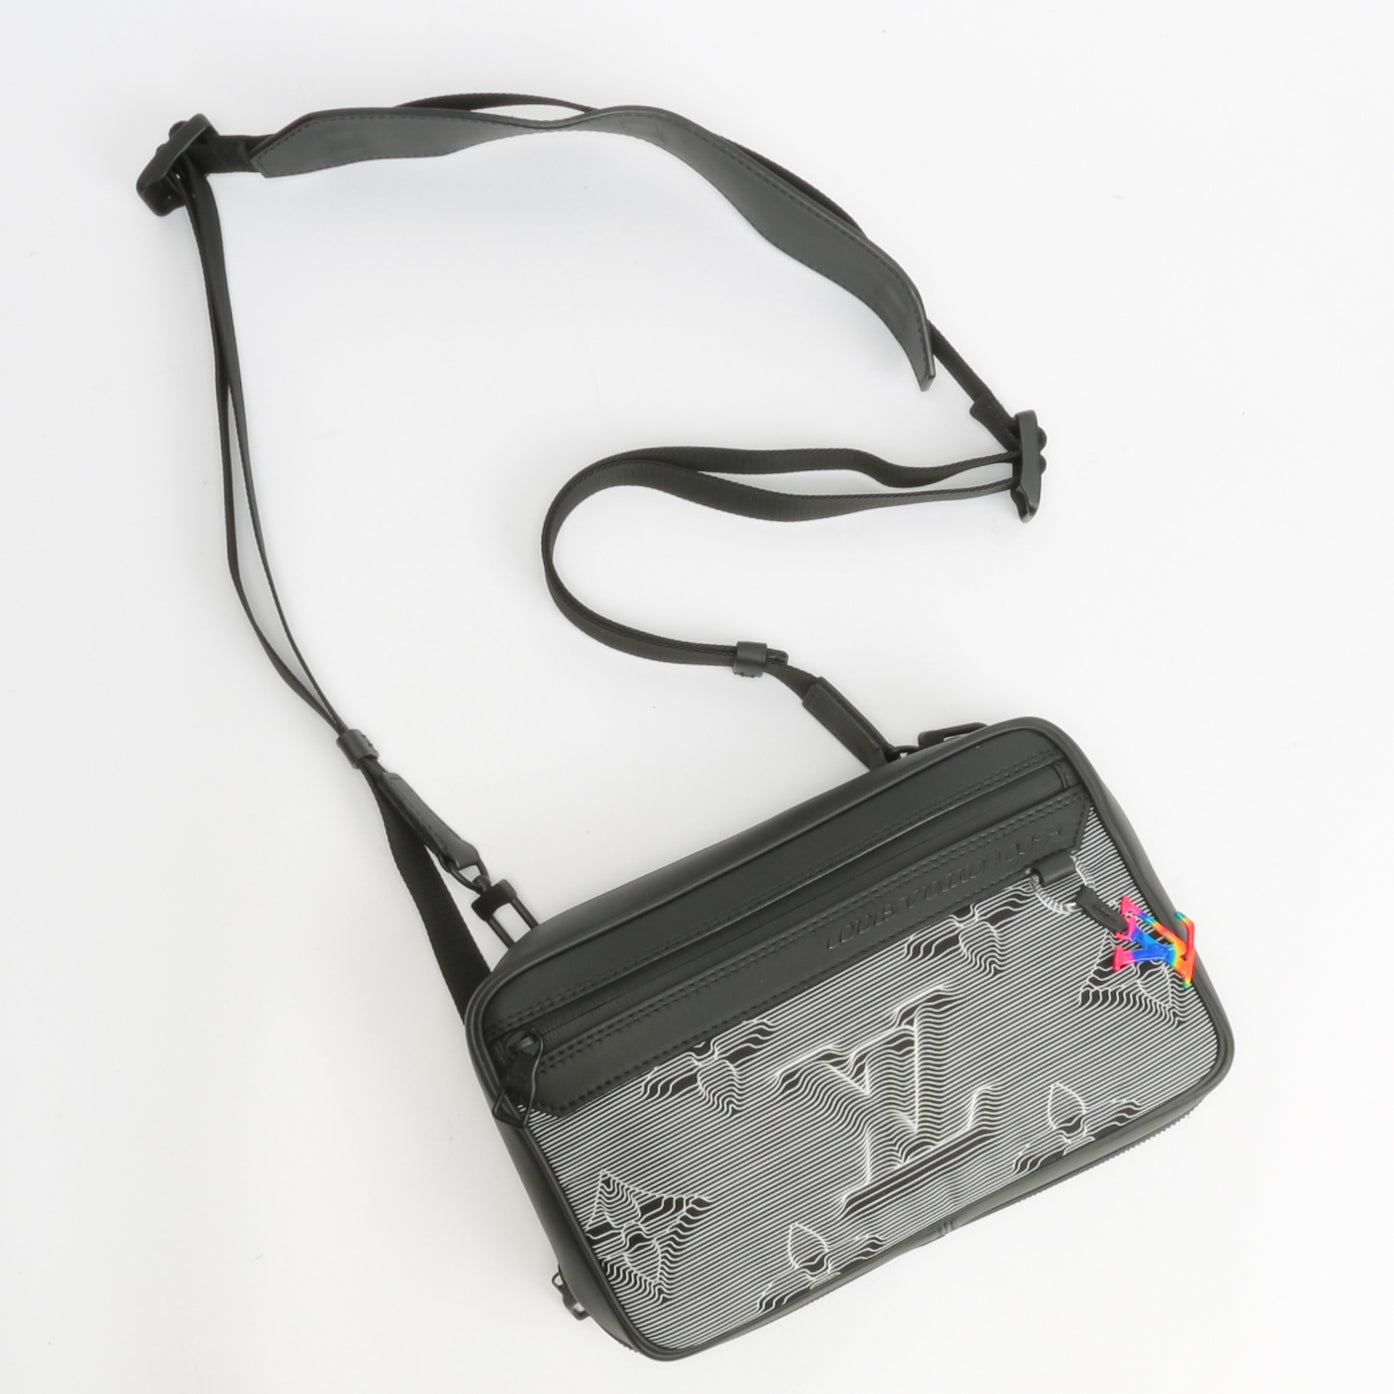 Louis Vuitton 2054 expandable messenger bag 